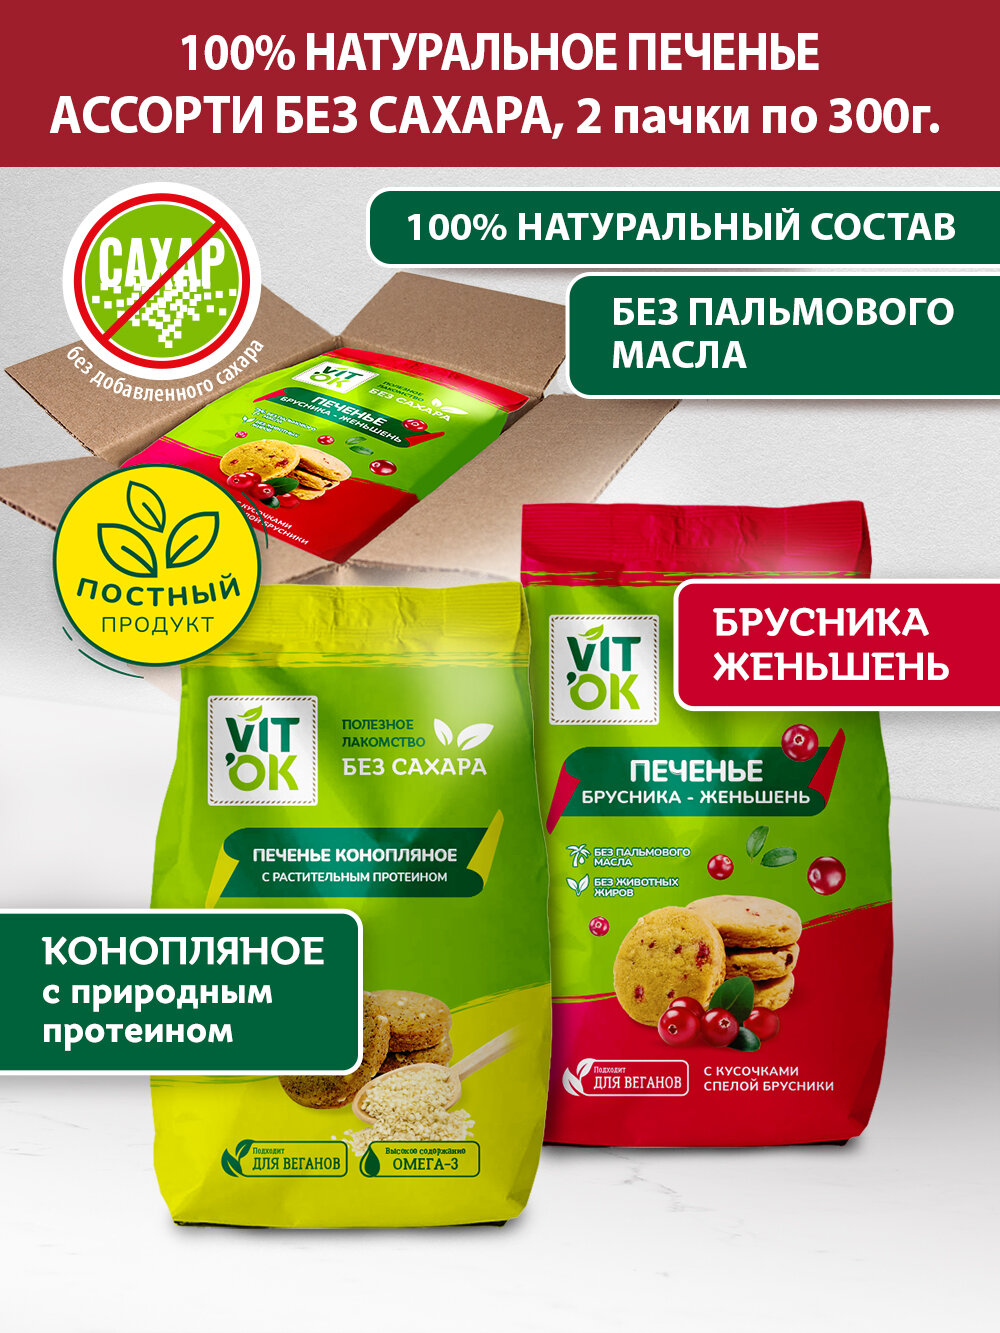 Печенье Vitok полезное натуральное без сахара ассорти протеиновое в коробке 2 шт по 300 г